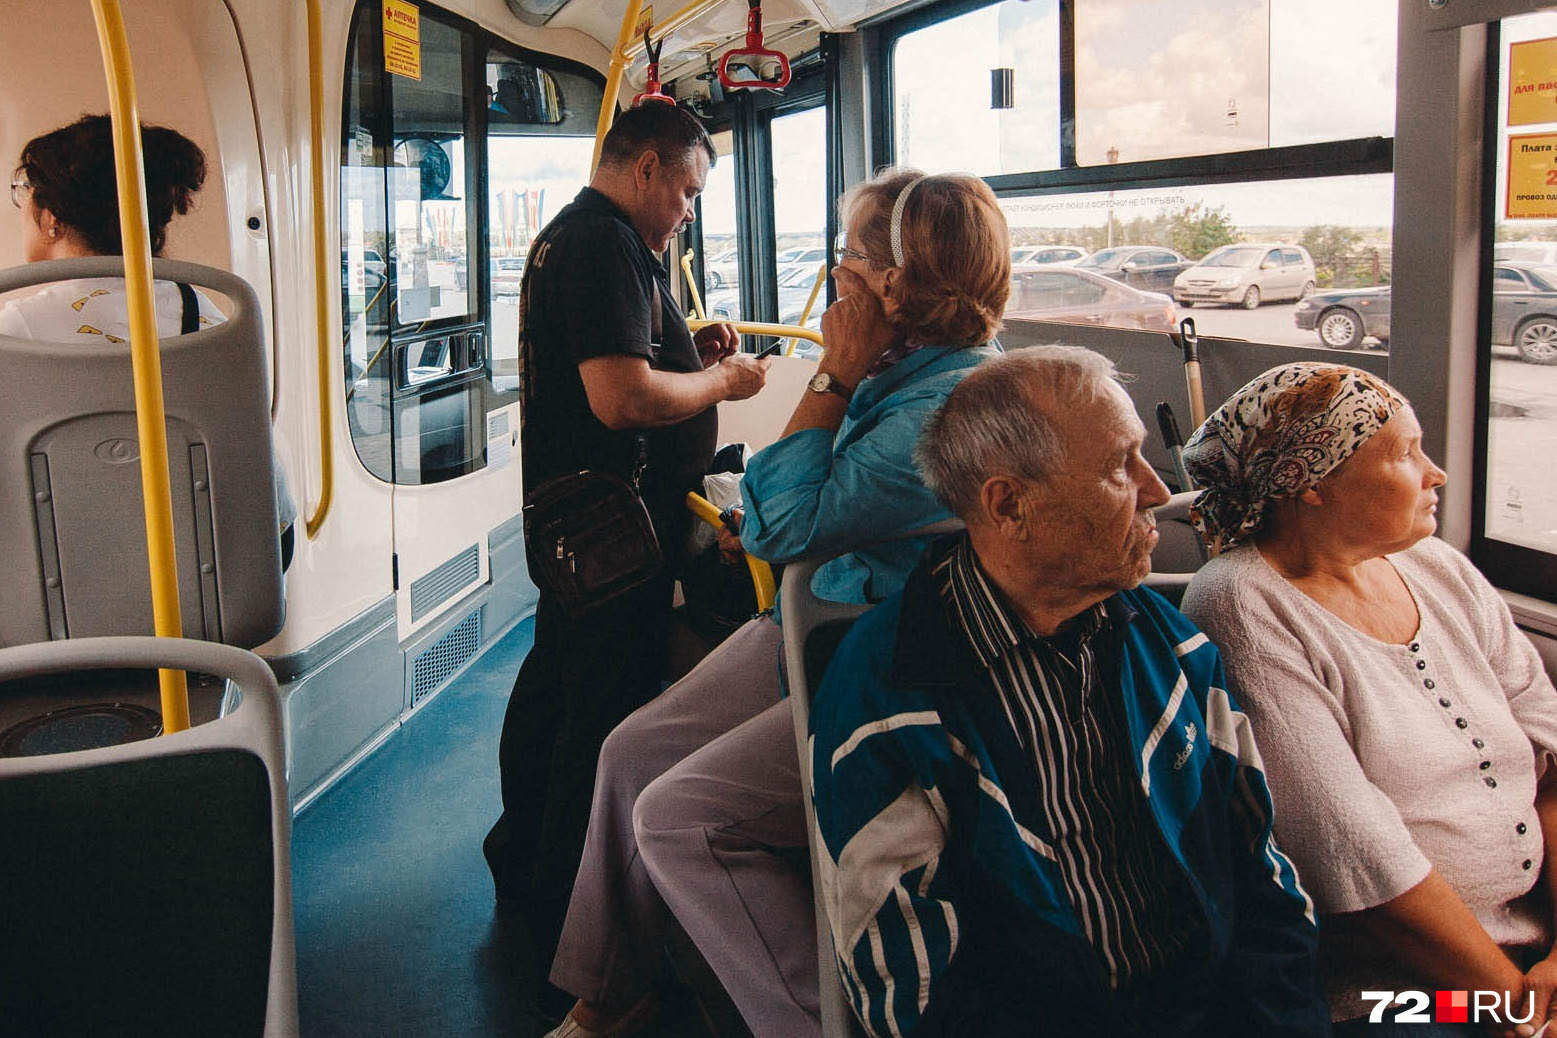 Салон автобуса с людьми. Фото в автобусе днем. Дачный автобус. Скоростной городской транспорт. Включи 3 автобуса